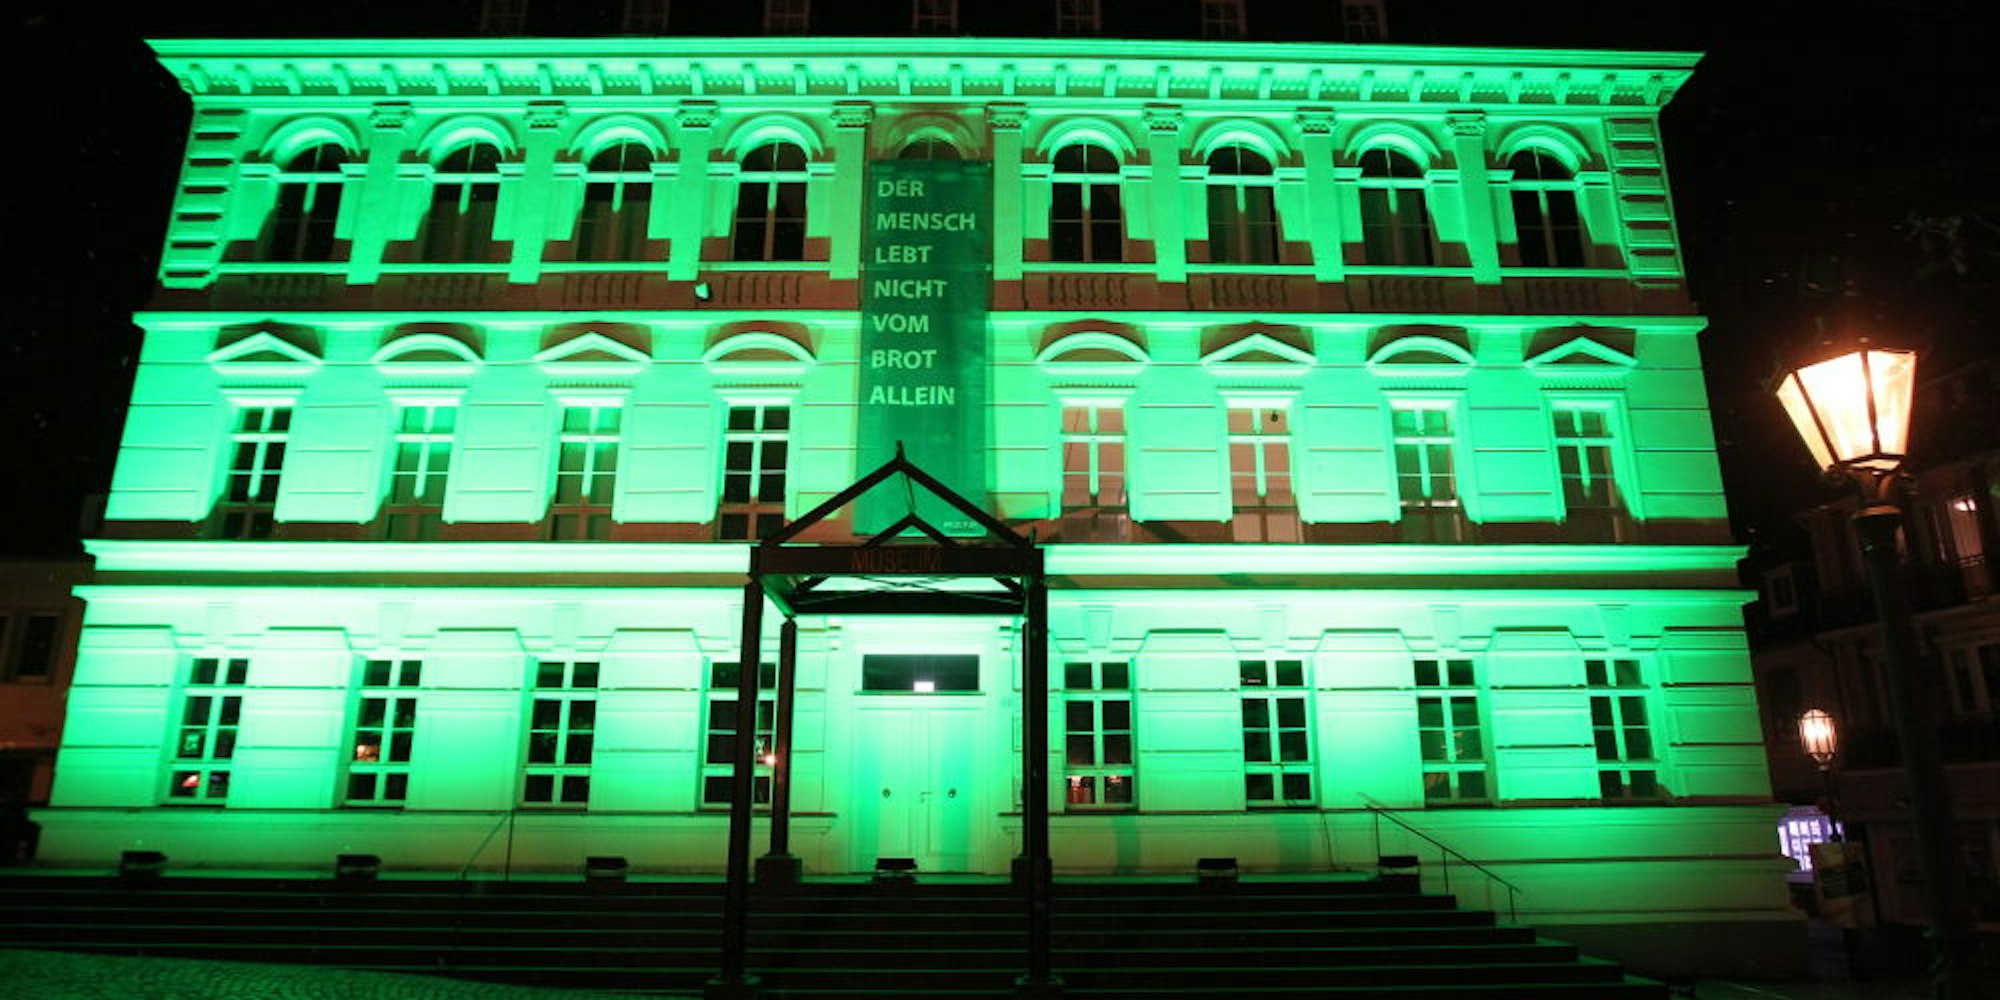 Das Siegburger Stadtmuseum war ebenfalls in grünes Licht getaucht.